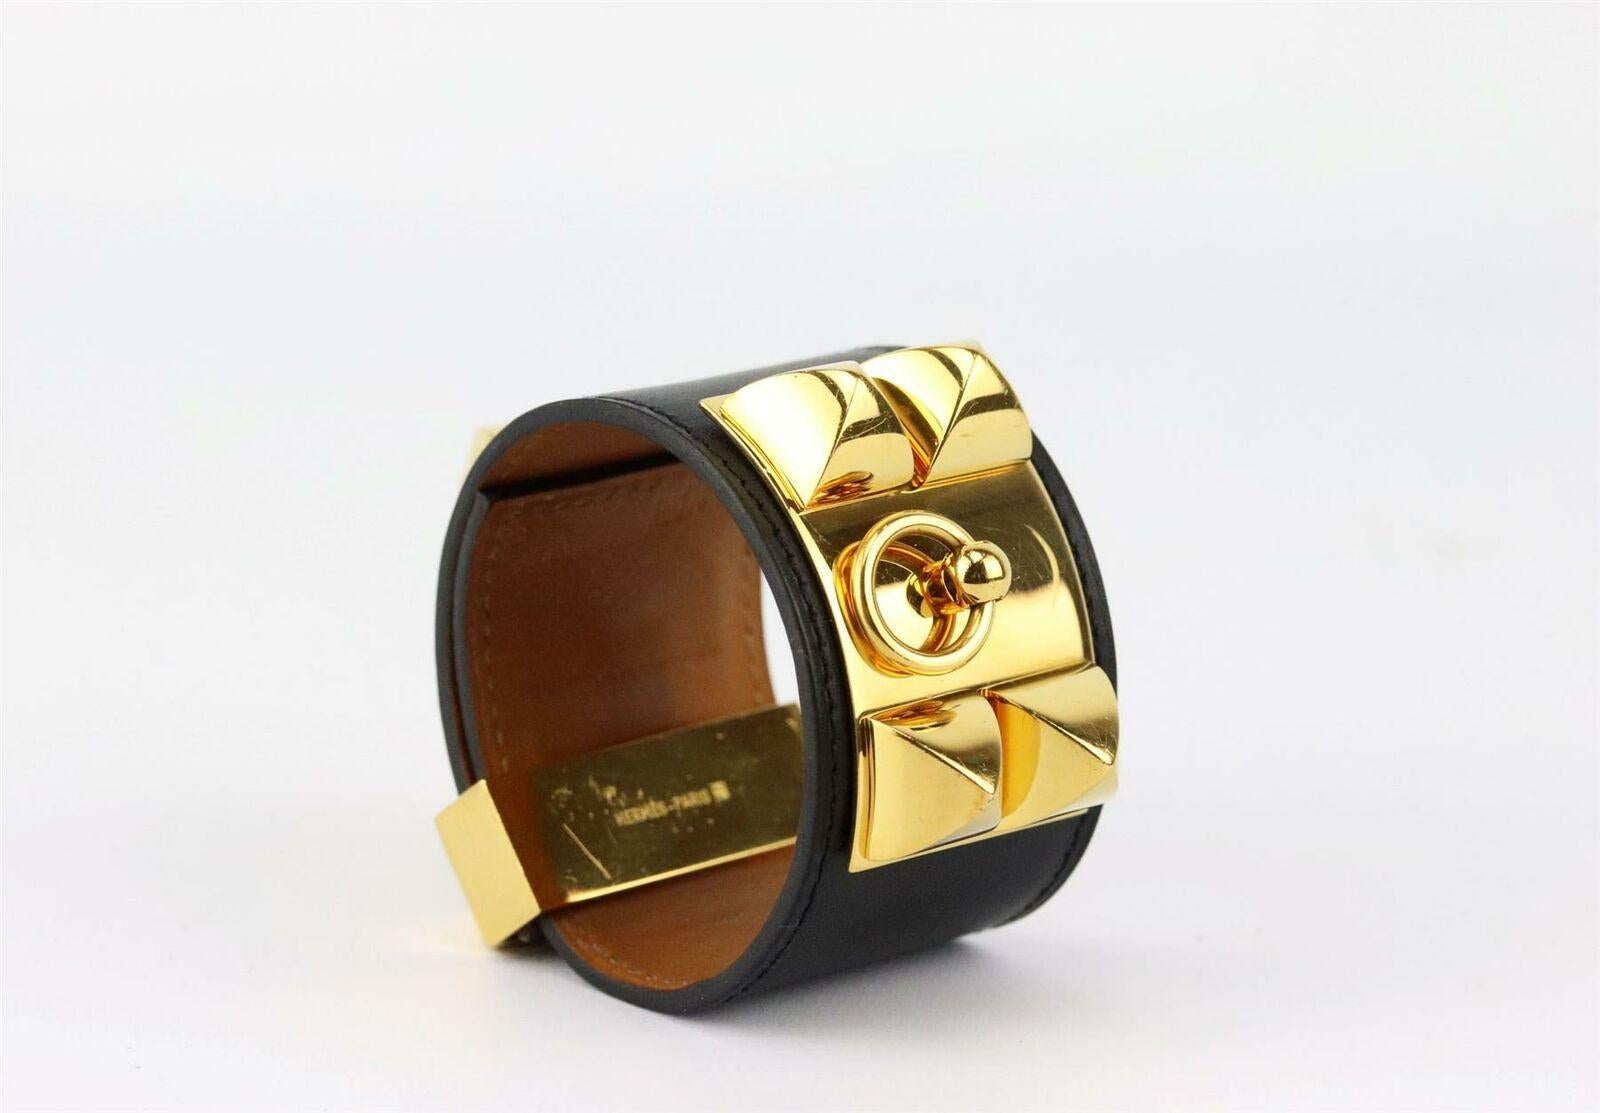 HERMÈS Hermes Collier de Chien Box Calfskin Leather Bracelet Cuff  Black Noir 